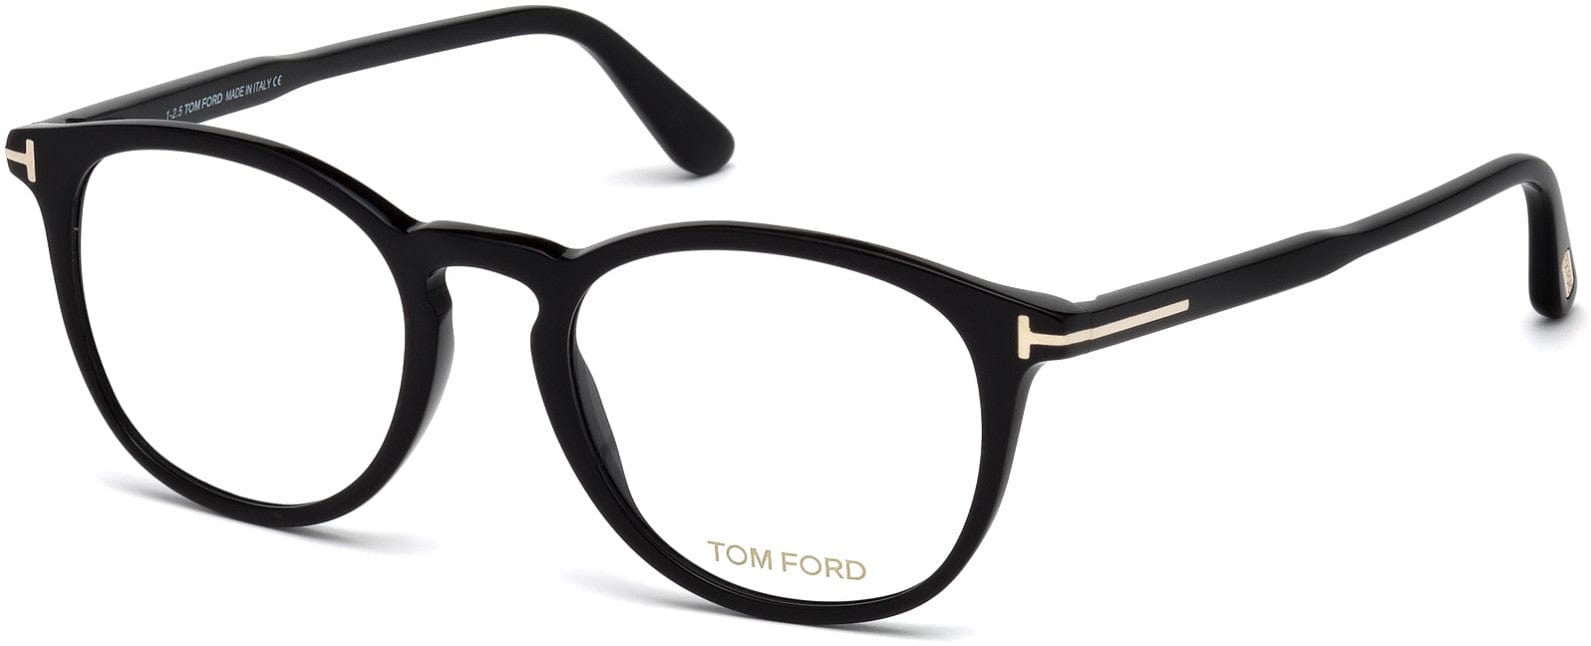 Tom Ford FT5401 Round Eyeglasses 001-001 - Shiny Black, Shiny Rose Gold "t" Logo